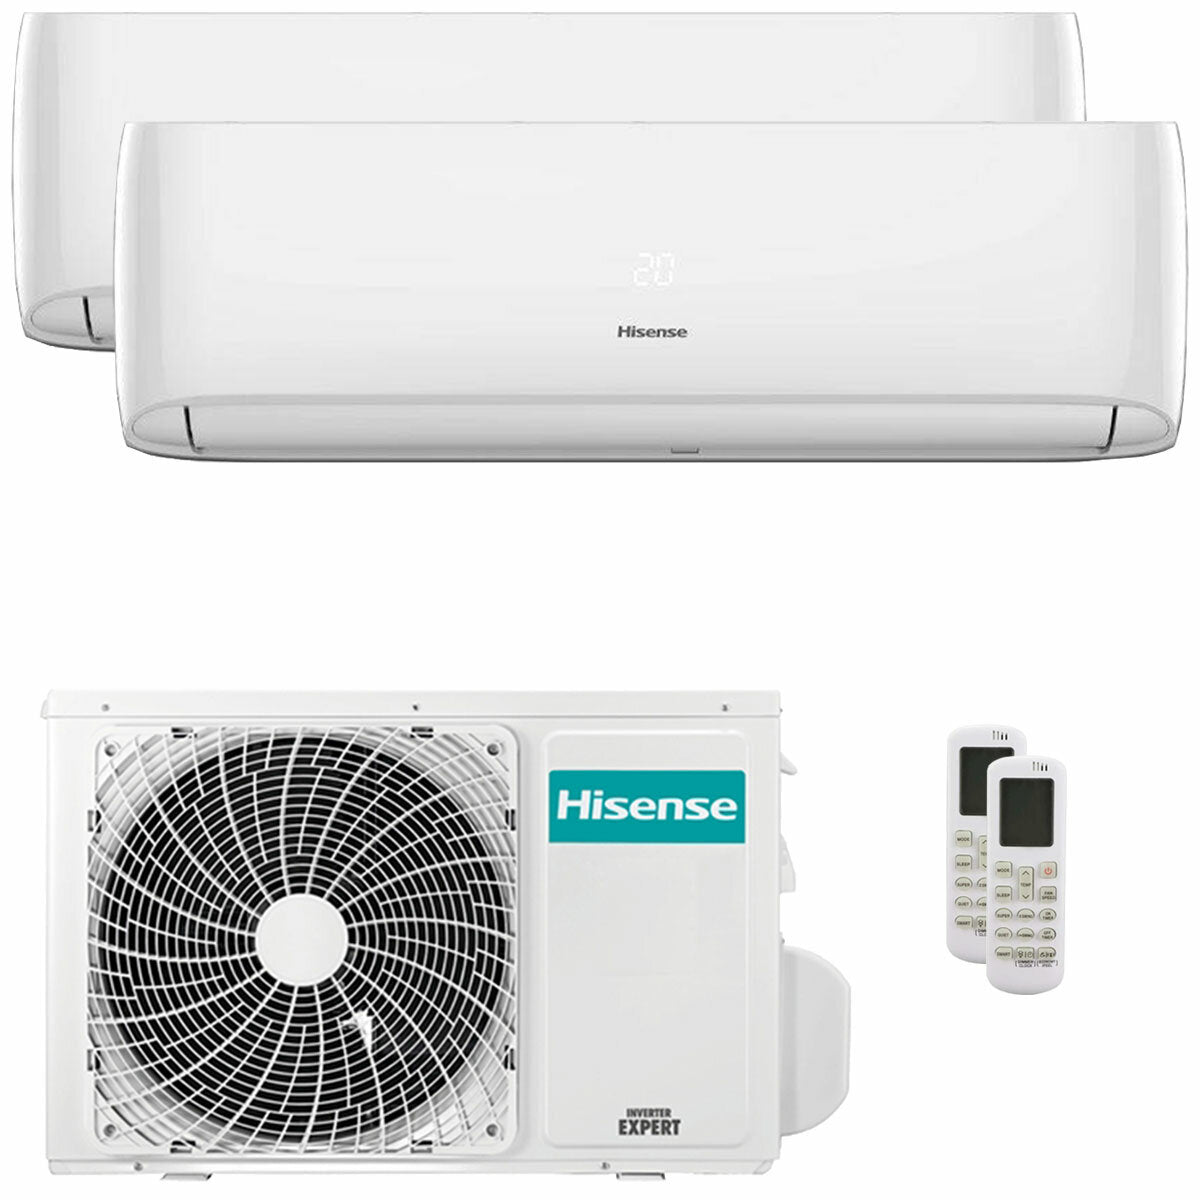 Hisense Hi-Comfort climatiseur double split 9000+9000 BTU onduleur A++ wifi externe 3,5 kW